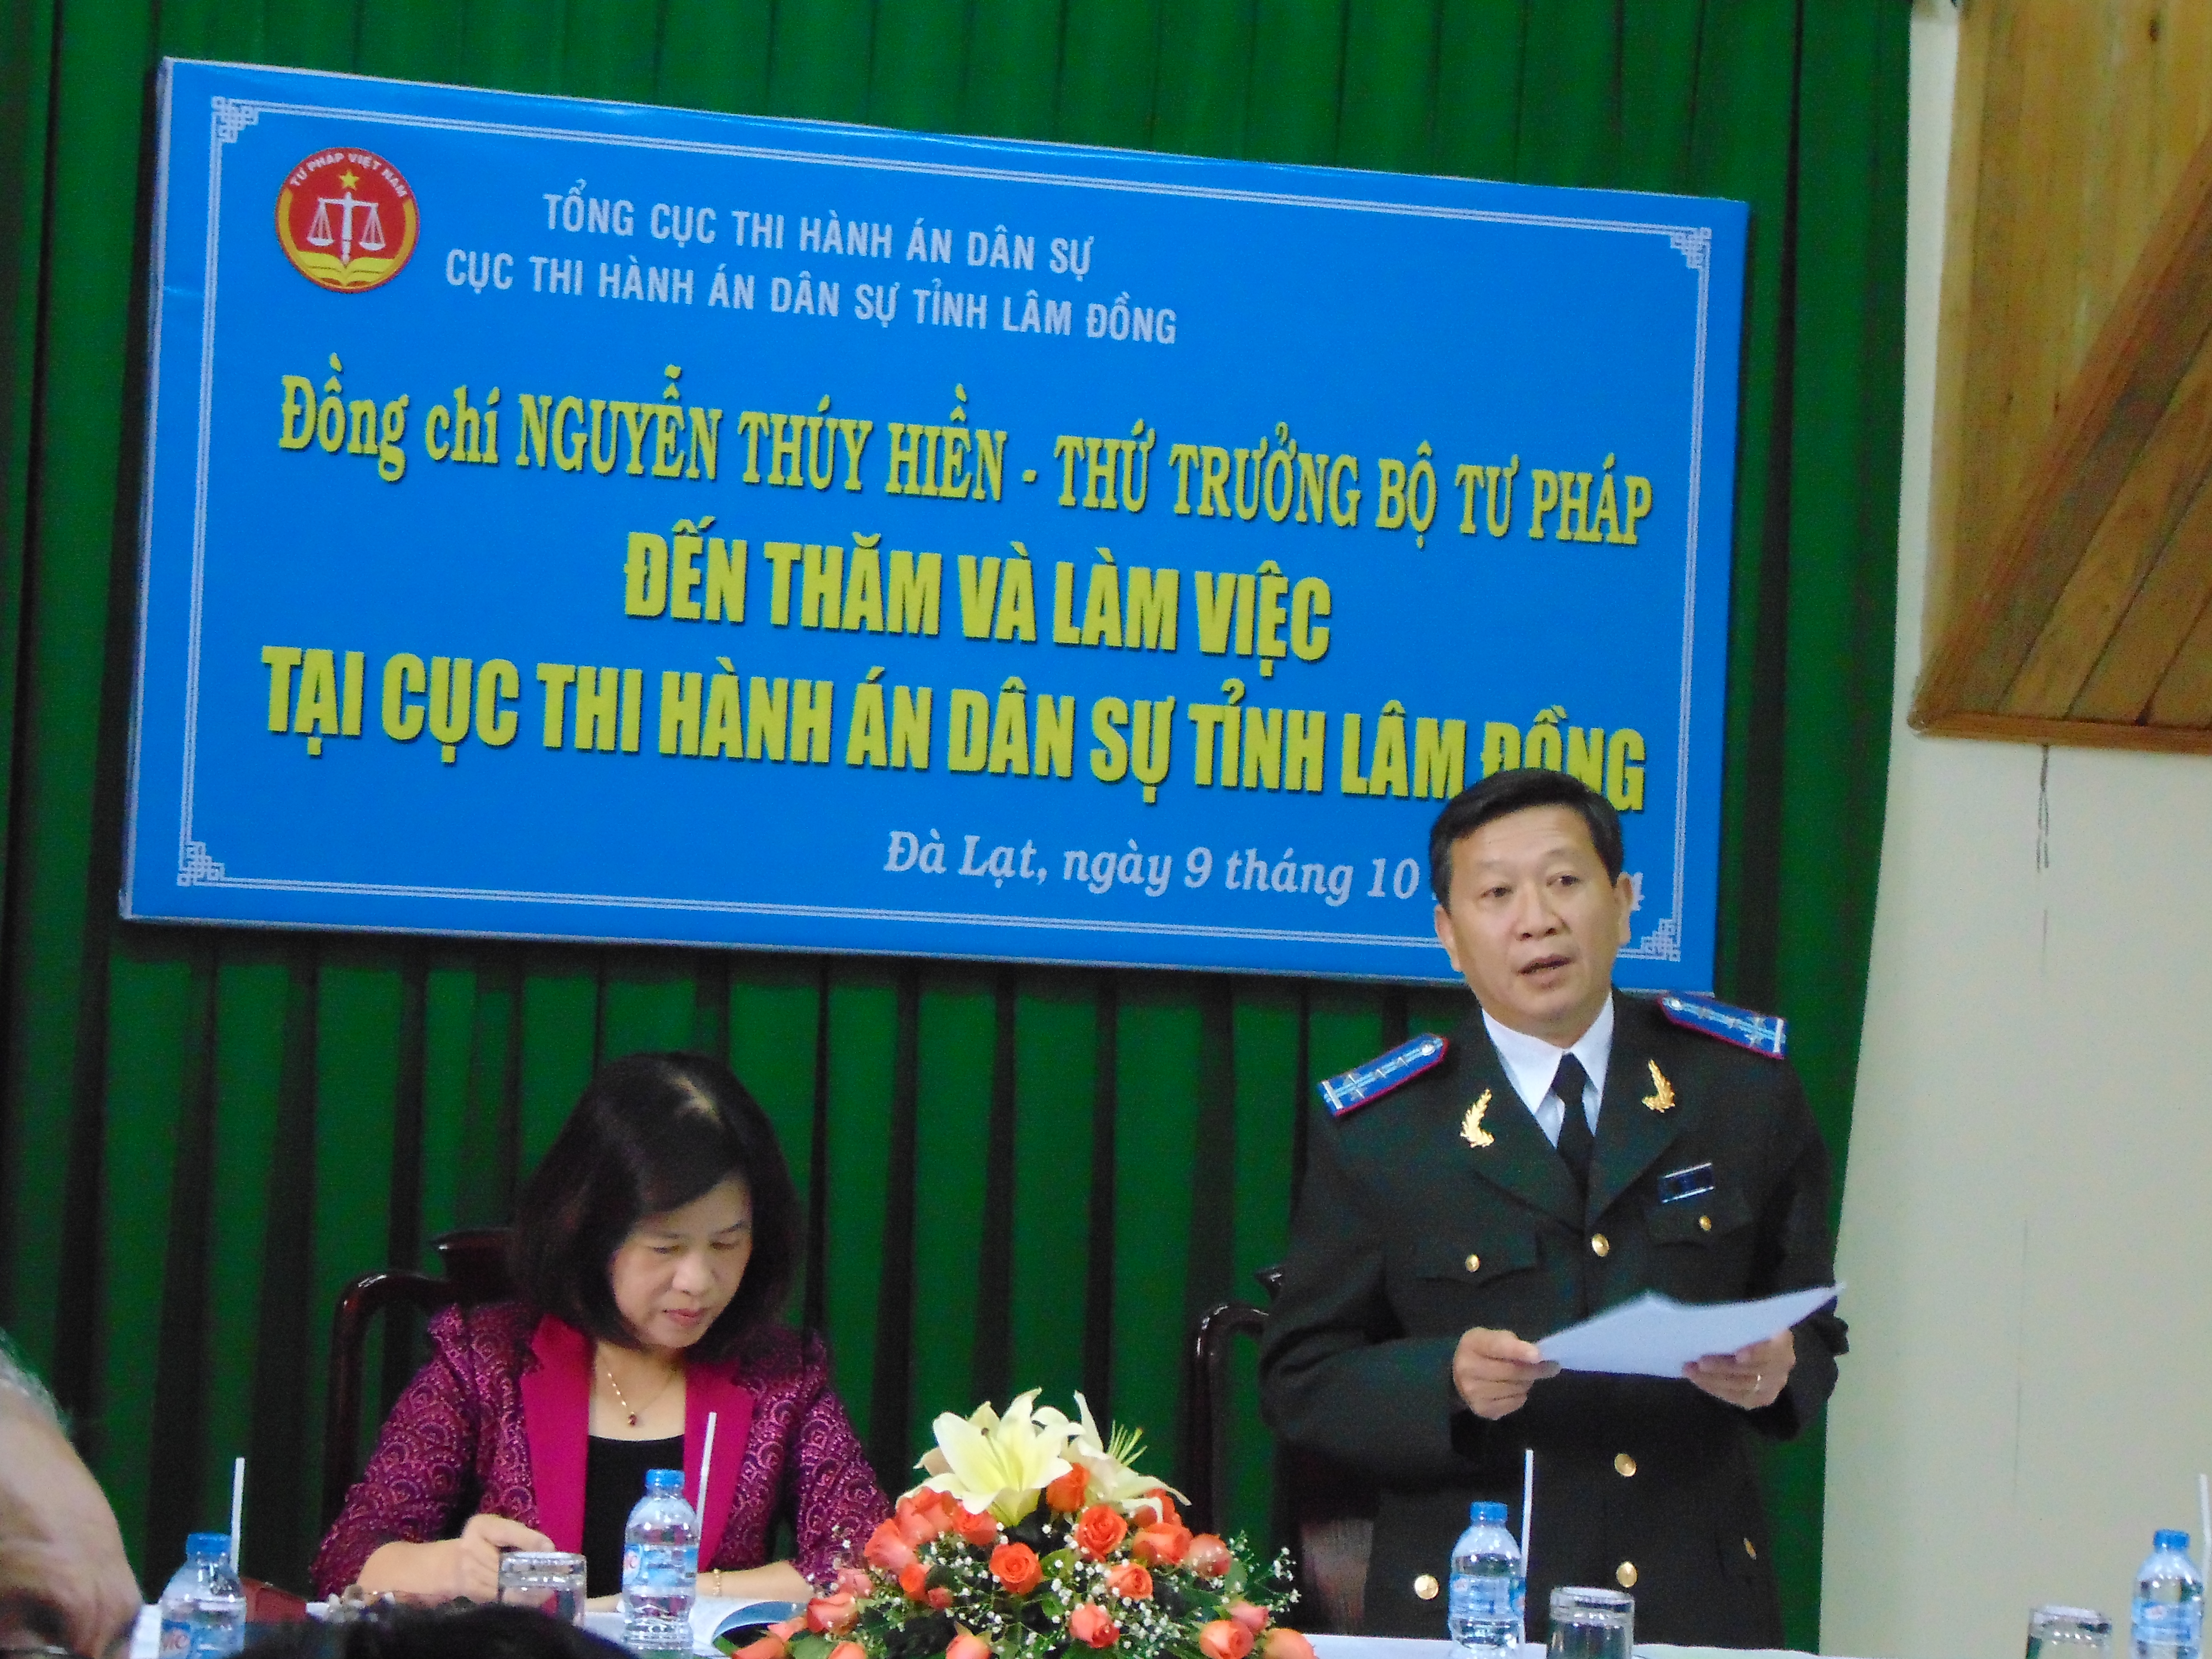 Đồng chí Nguyễn Thúy Hiền - Thứ trưởng Bộ Tư pháp thăm và làm việc